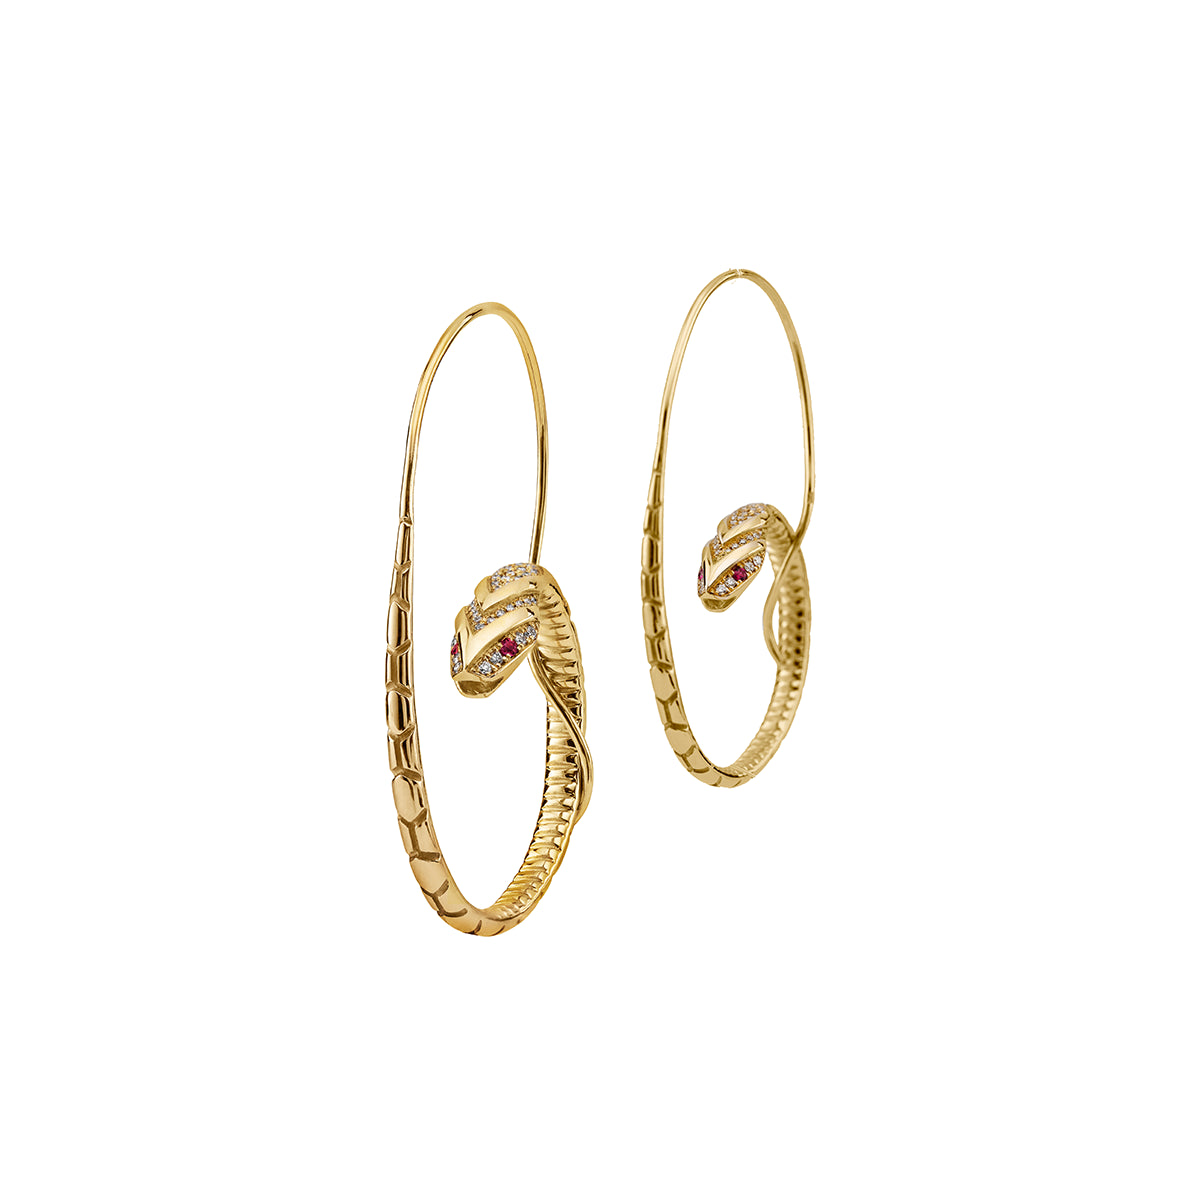 The Snake Hoop Earrings by Azza Fahmy - Designer Earrings